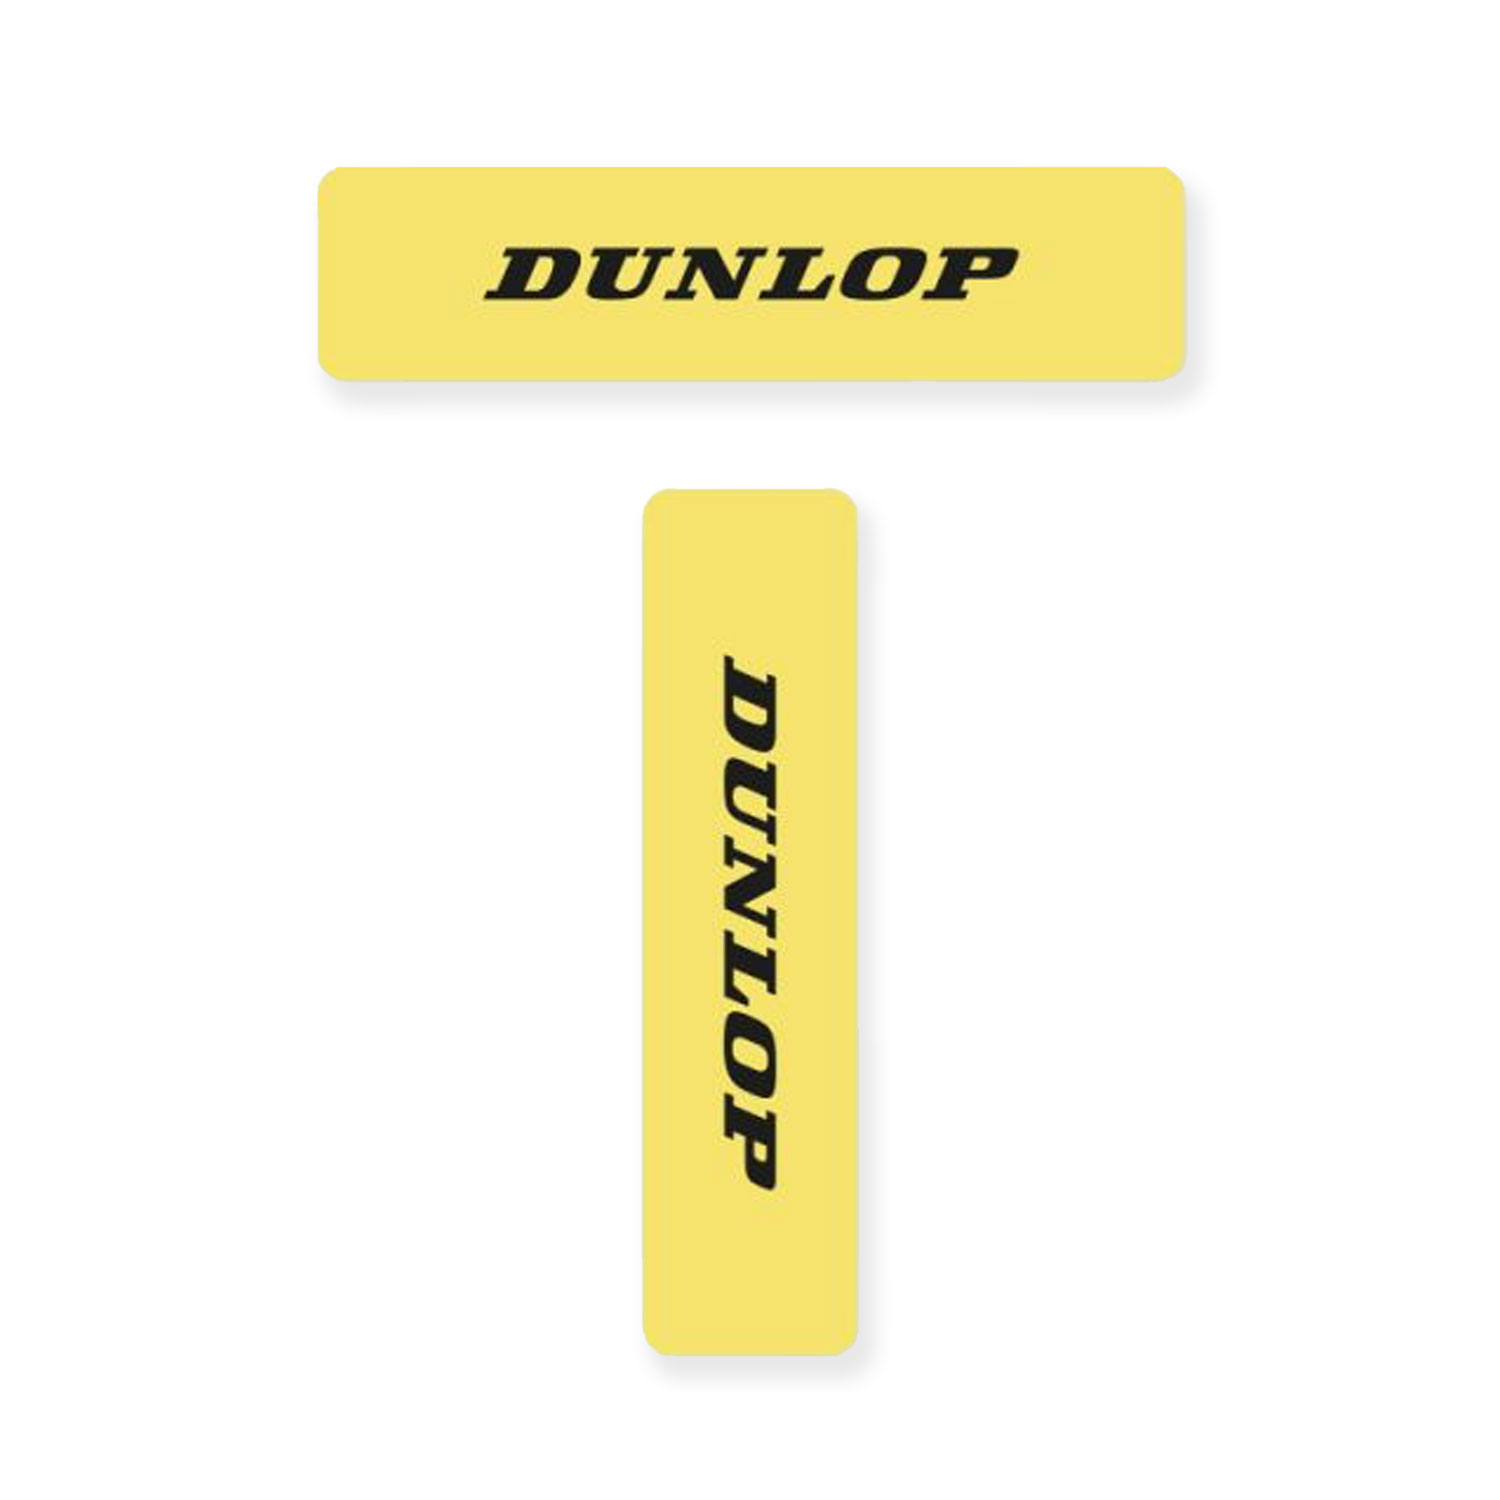 Dunlop Court Líneas - Yellow